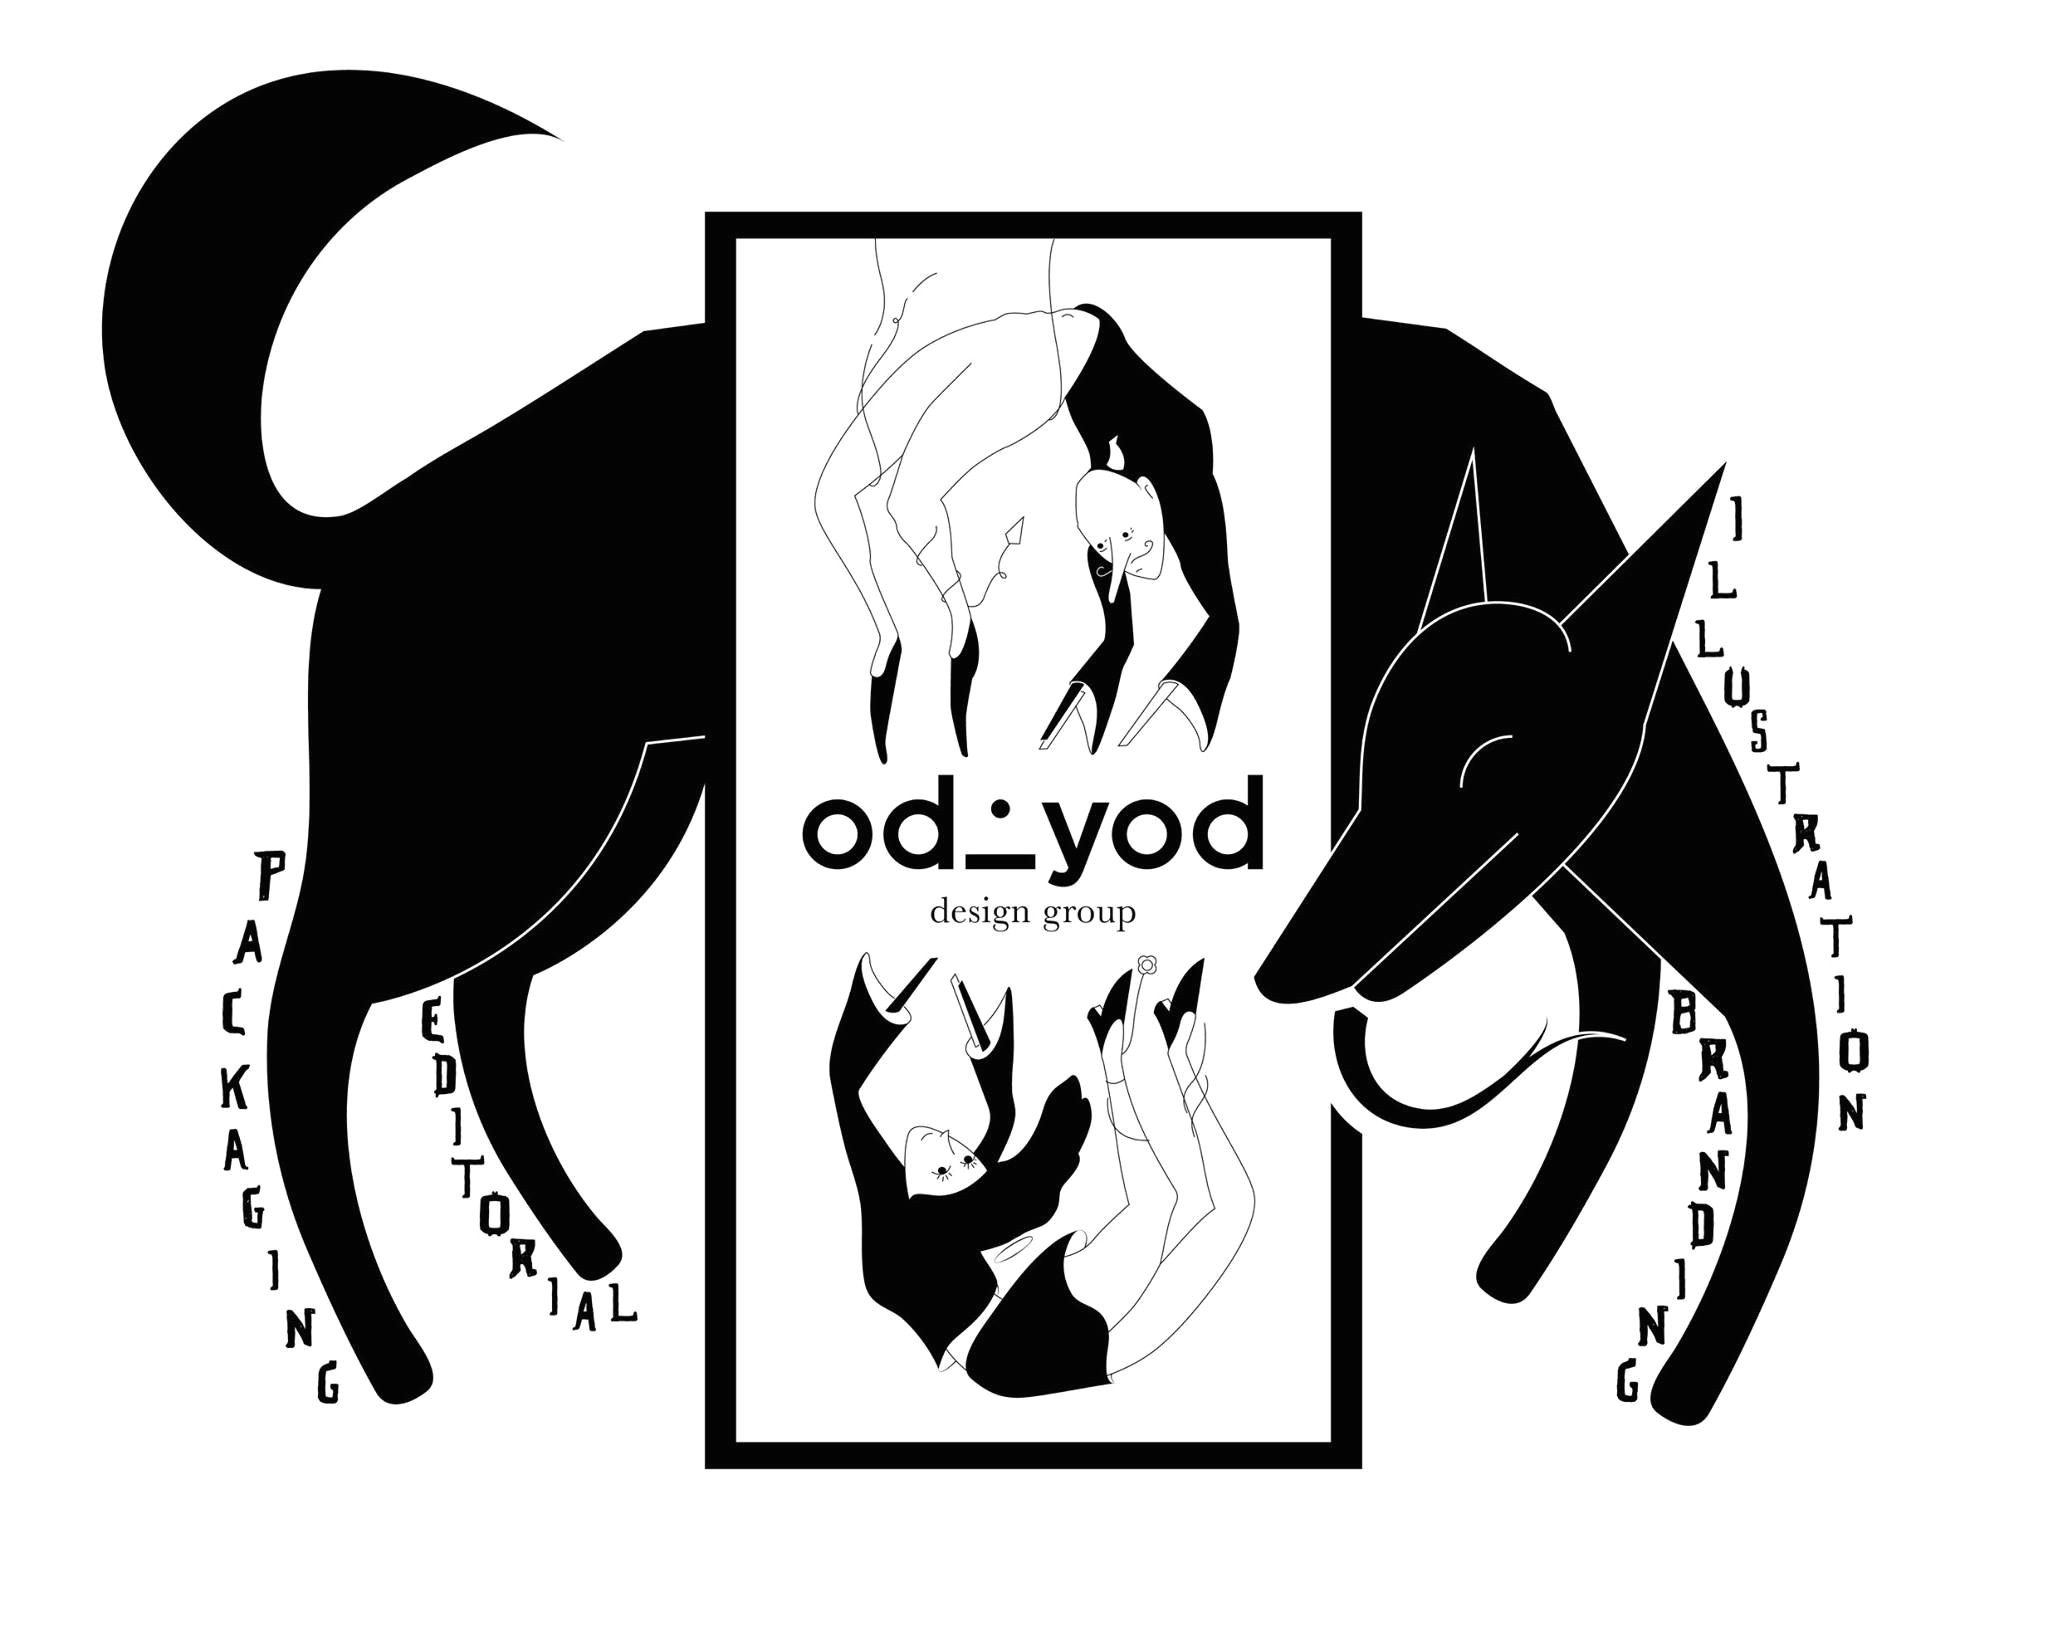 Drawing Of A Dog Jumping Odd Triad A Girl A Boy A Dog Oddyod Sekaf Dog Black Design